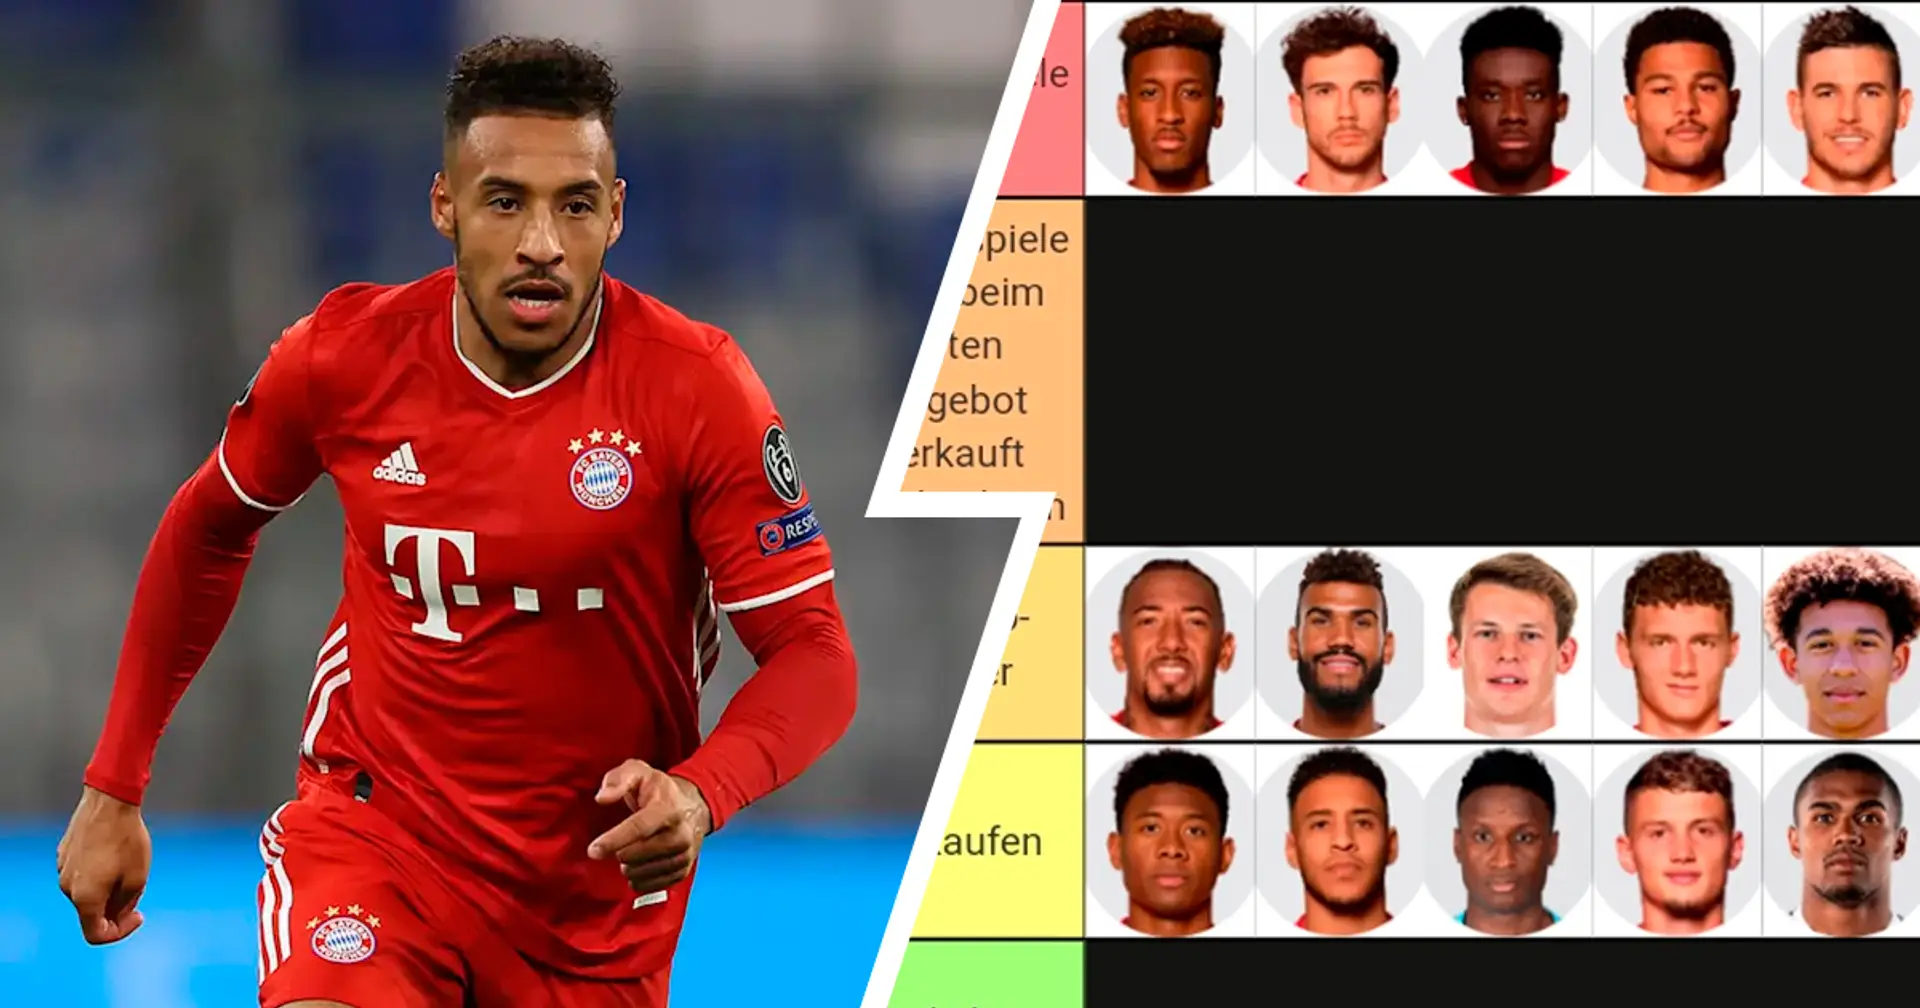 Bayern-Kader 2021/22: So sieht meine Auswahl aus